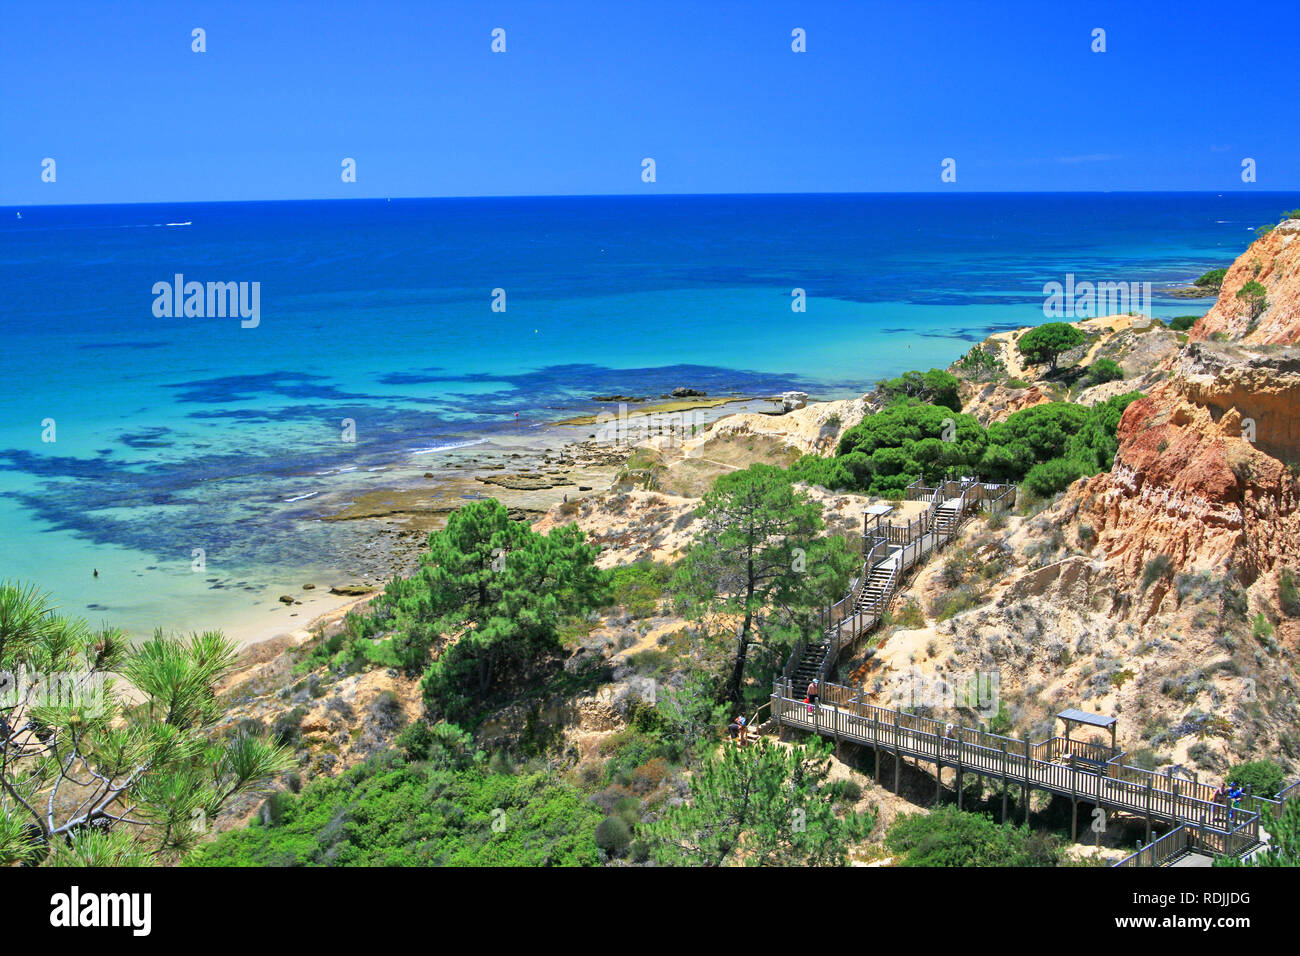 Bella vista di Praia da Falesia con spiaggia di sabbia bianca e acqua turchese in Algarve Portogallo Foto Stock